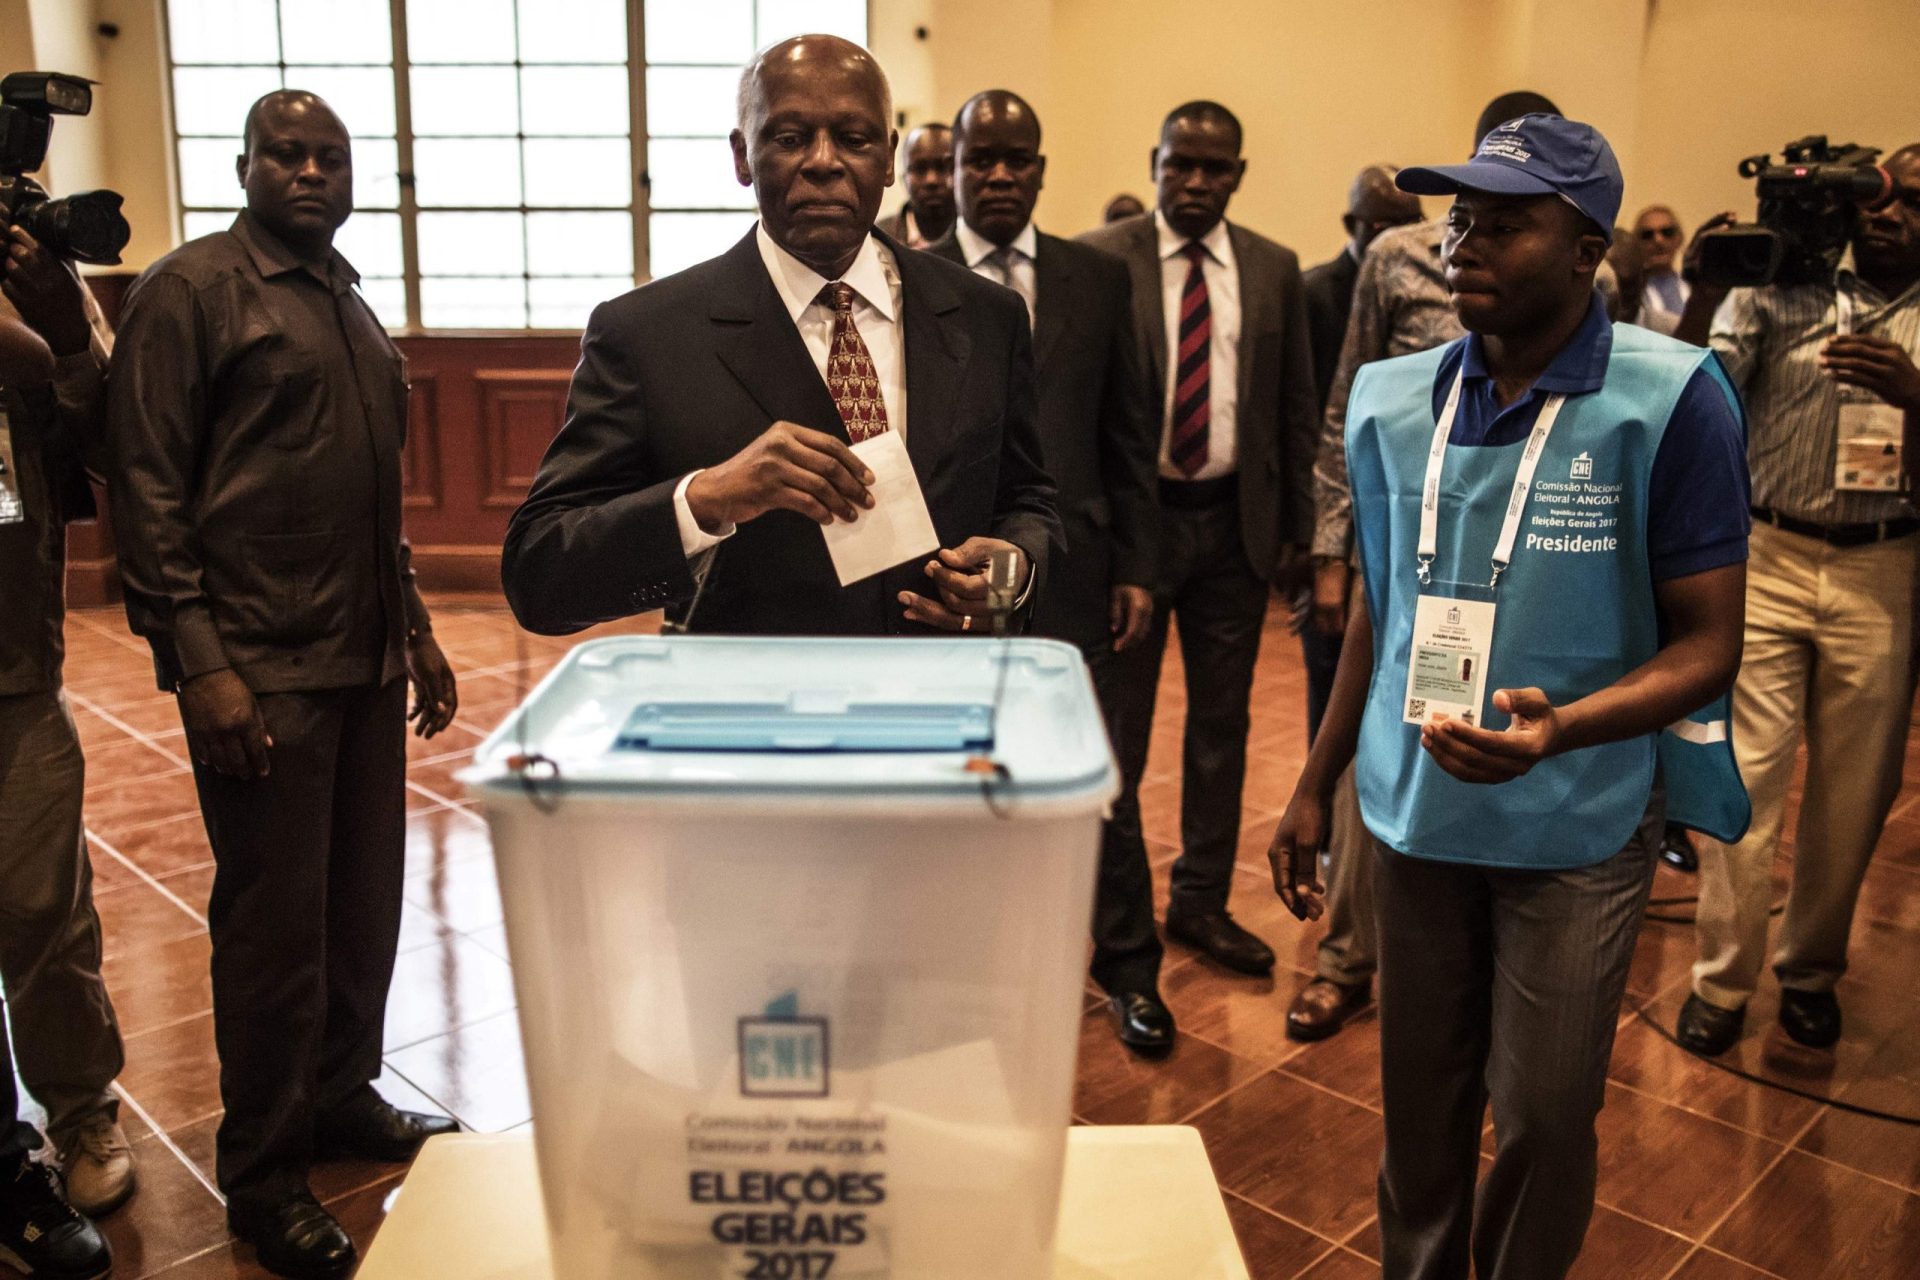 Eleições angolanas. MPLA à espera de chegar à maioria qualificada